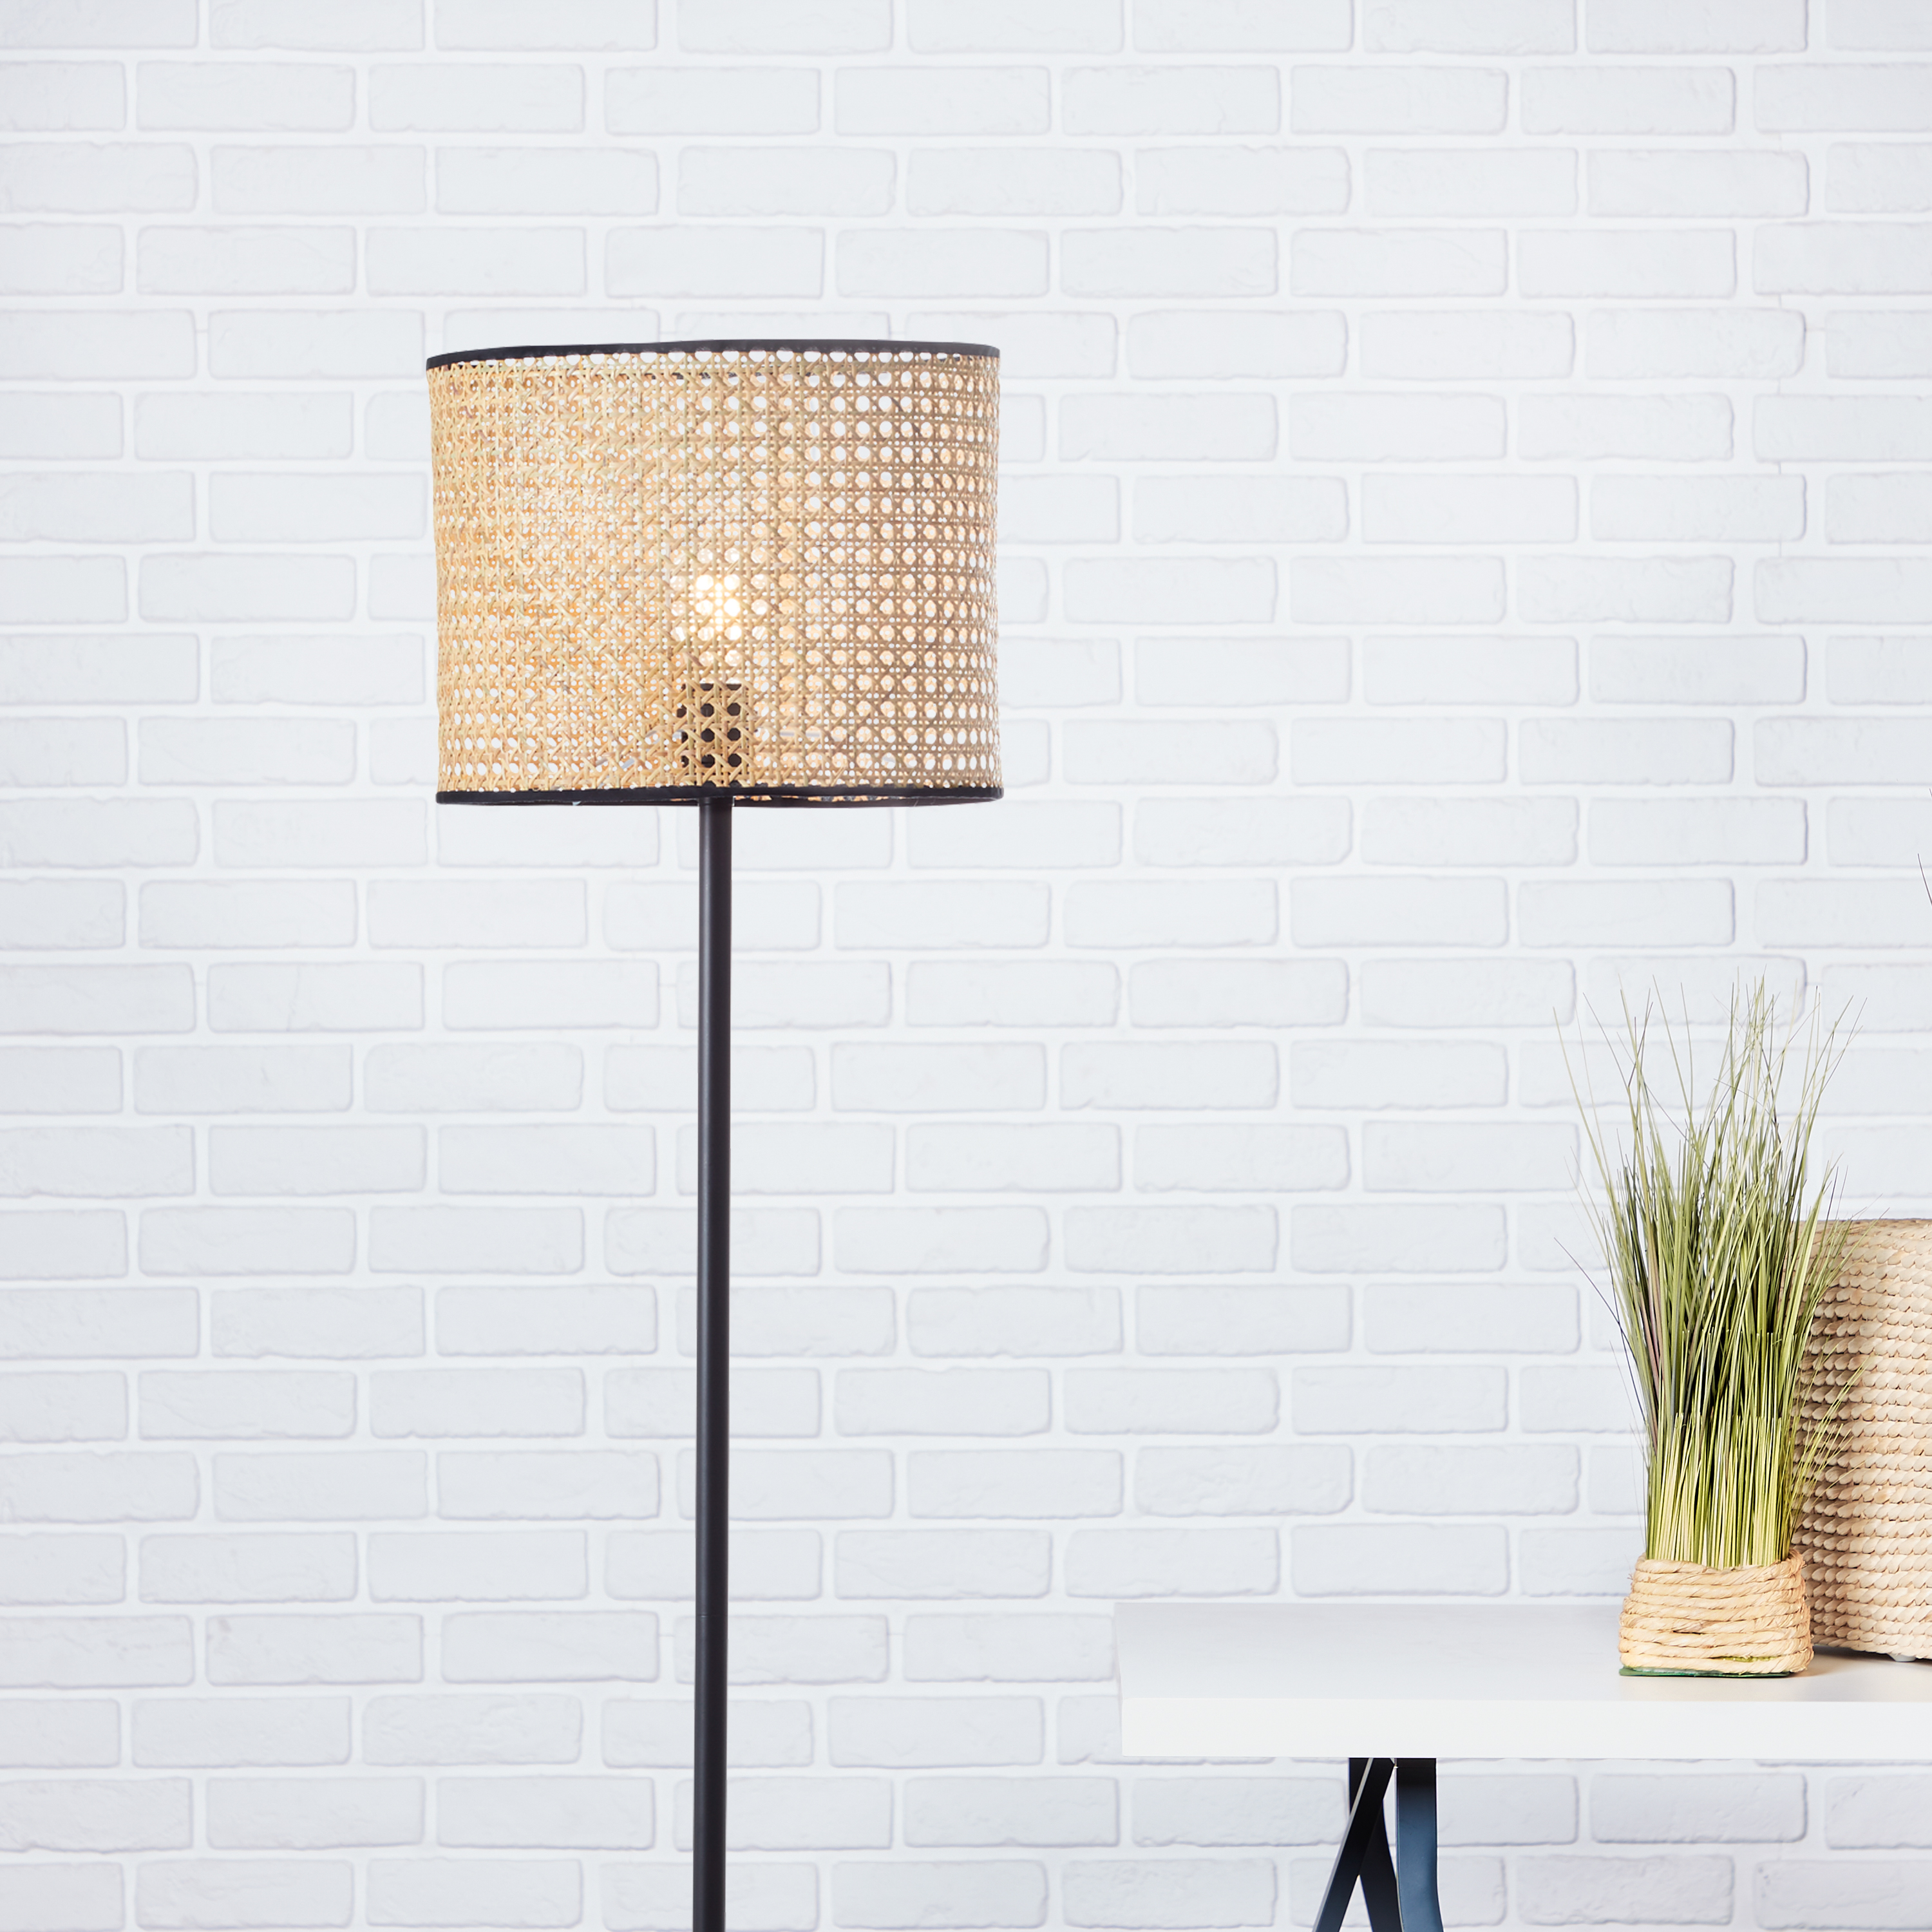 BRILLIANT natürliche Standleuchte WILEY | Standlampe mit Schirm aus Rattan  Ø 30 cm | 1x E27 Fassung max. 60W